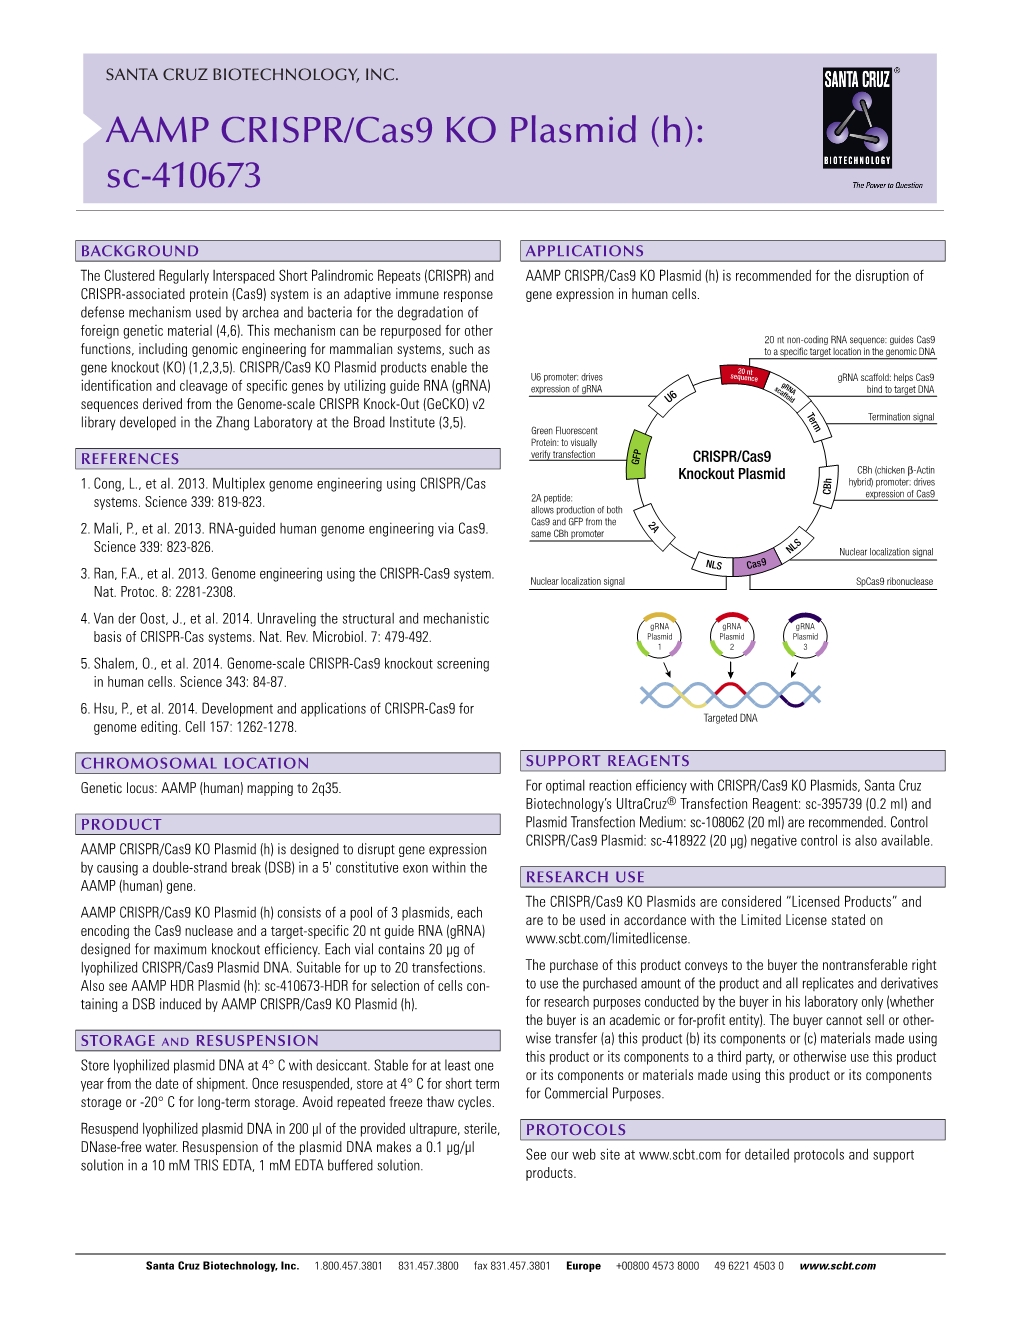 AAMP CRISPR/Cas9 KO Plasmid (H): Sc-410673